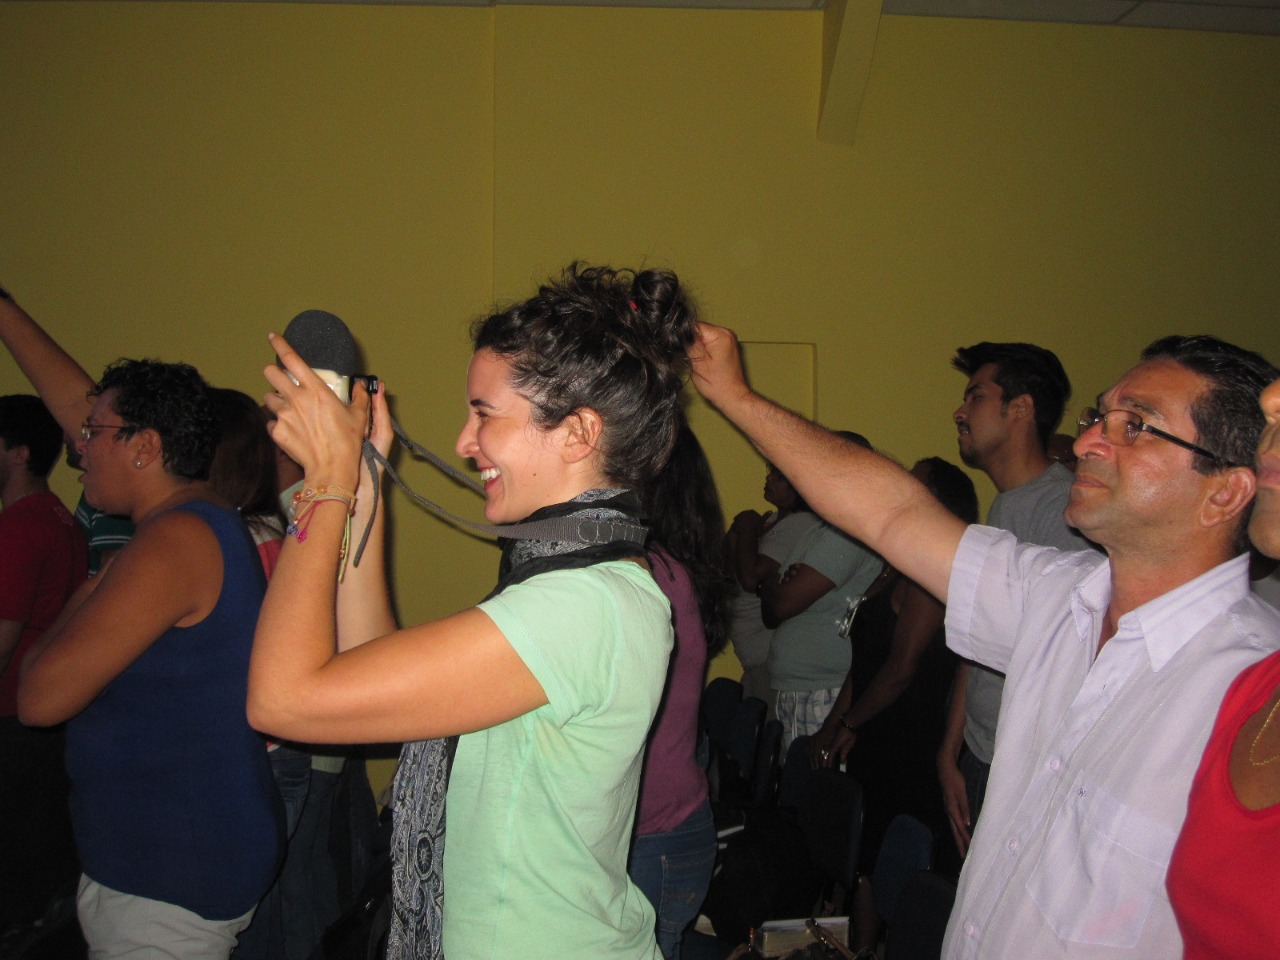 Naudascher fazendo uma reportagem num templo evangélico inclusivo no Rio de Janeiro, em 2012.  Arquivo pessoal.